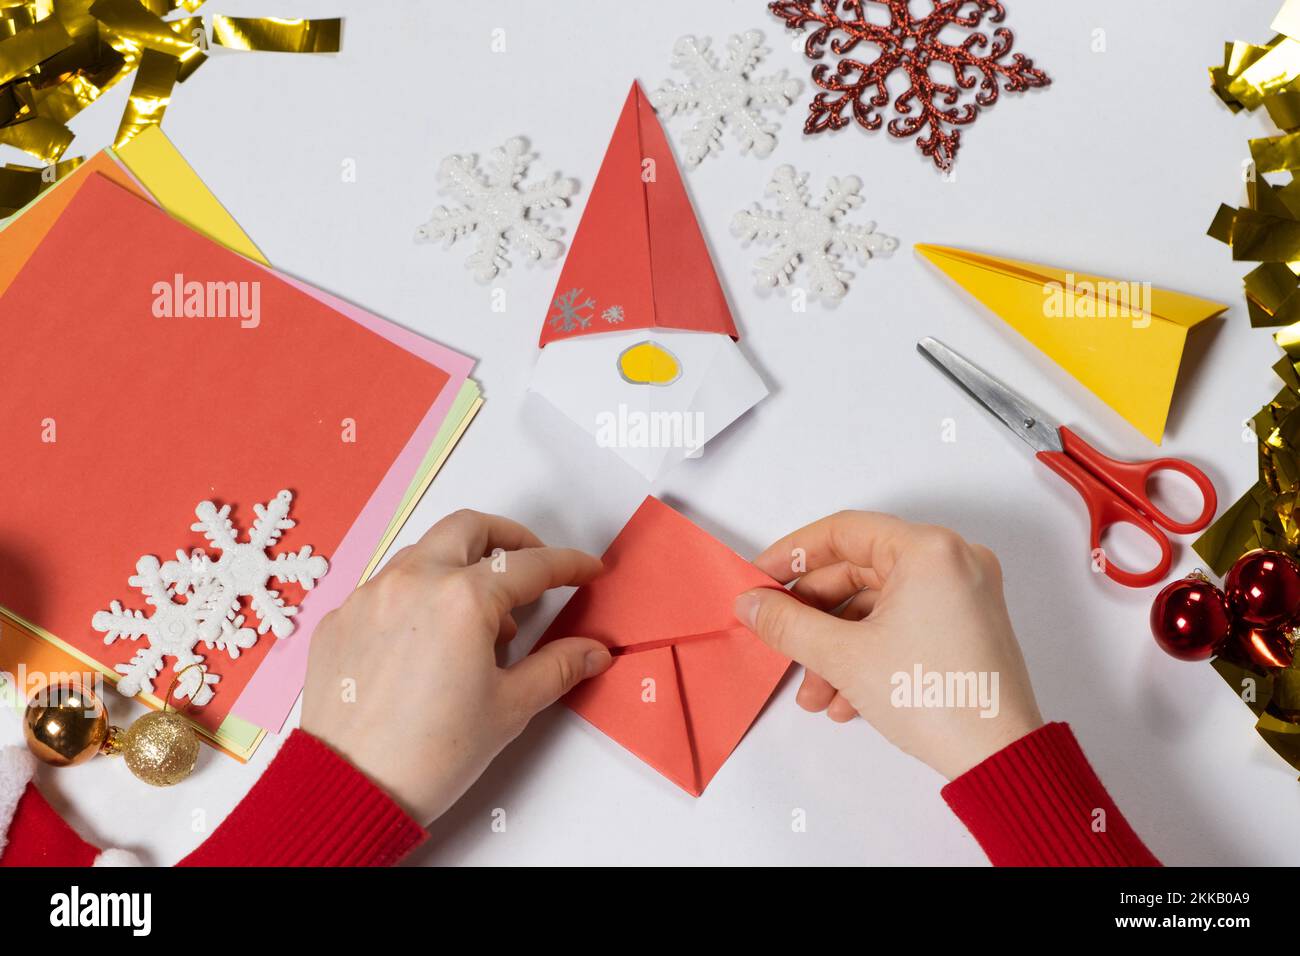 Création d'artisanat d'origami à partir de papier pour Noël et nouvel an, figurine de gnome Banque D'Images